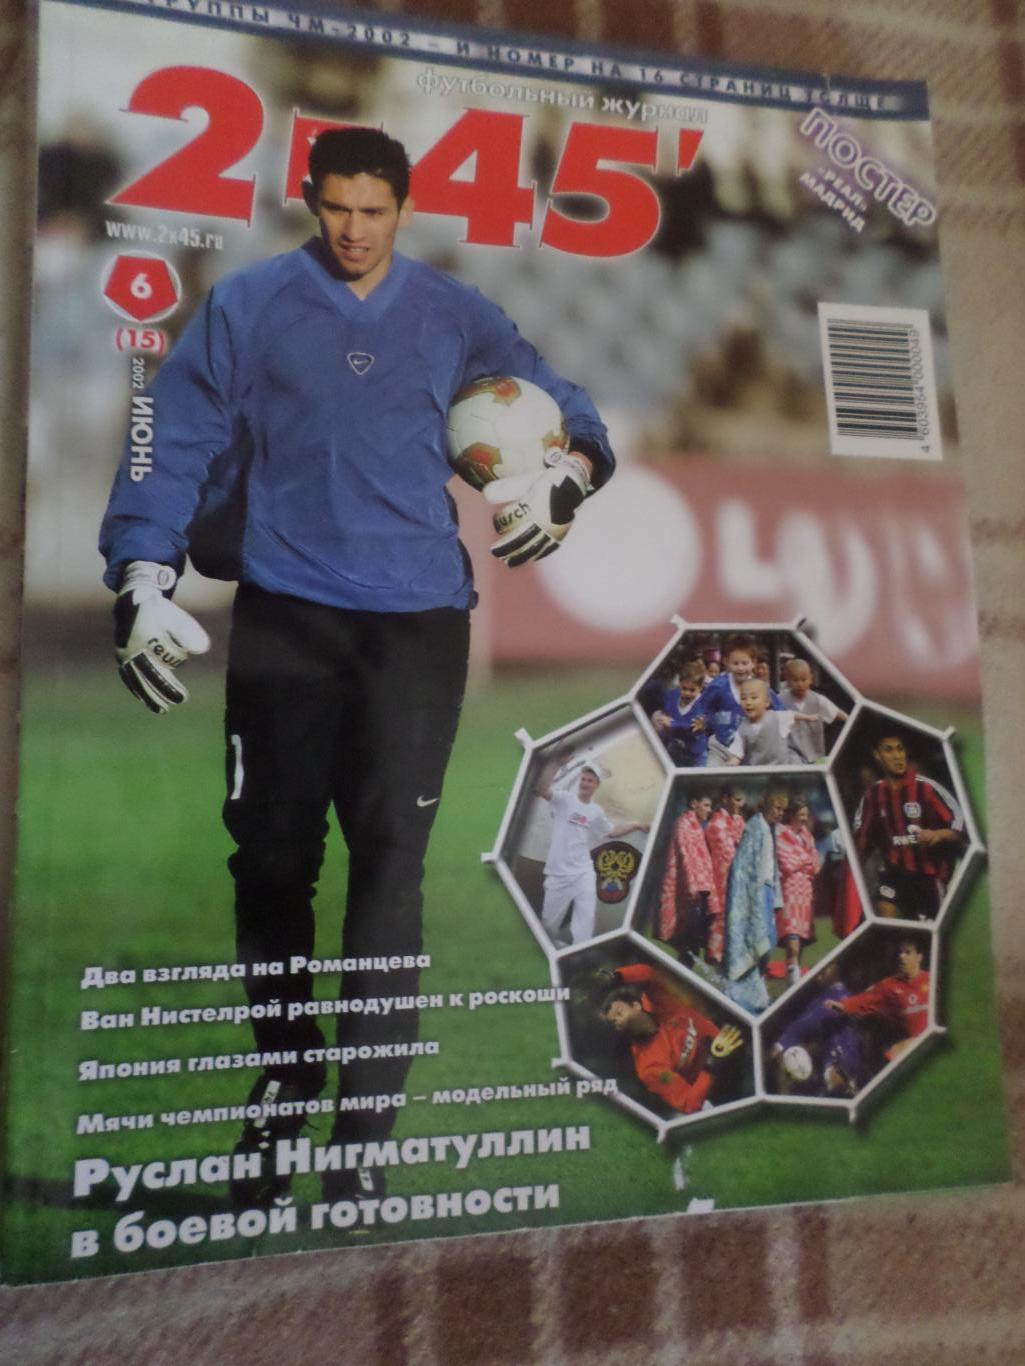 журнал Футбол 2 х 45 № 6 2002 г